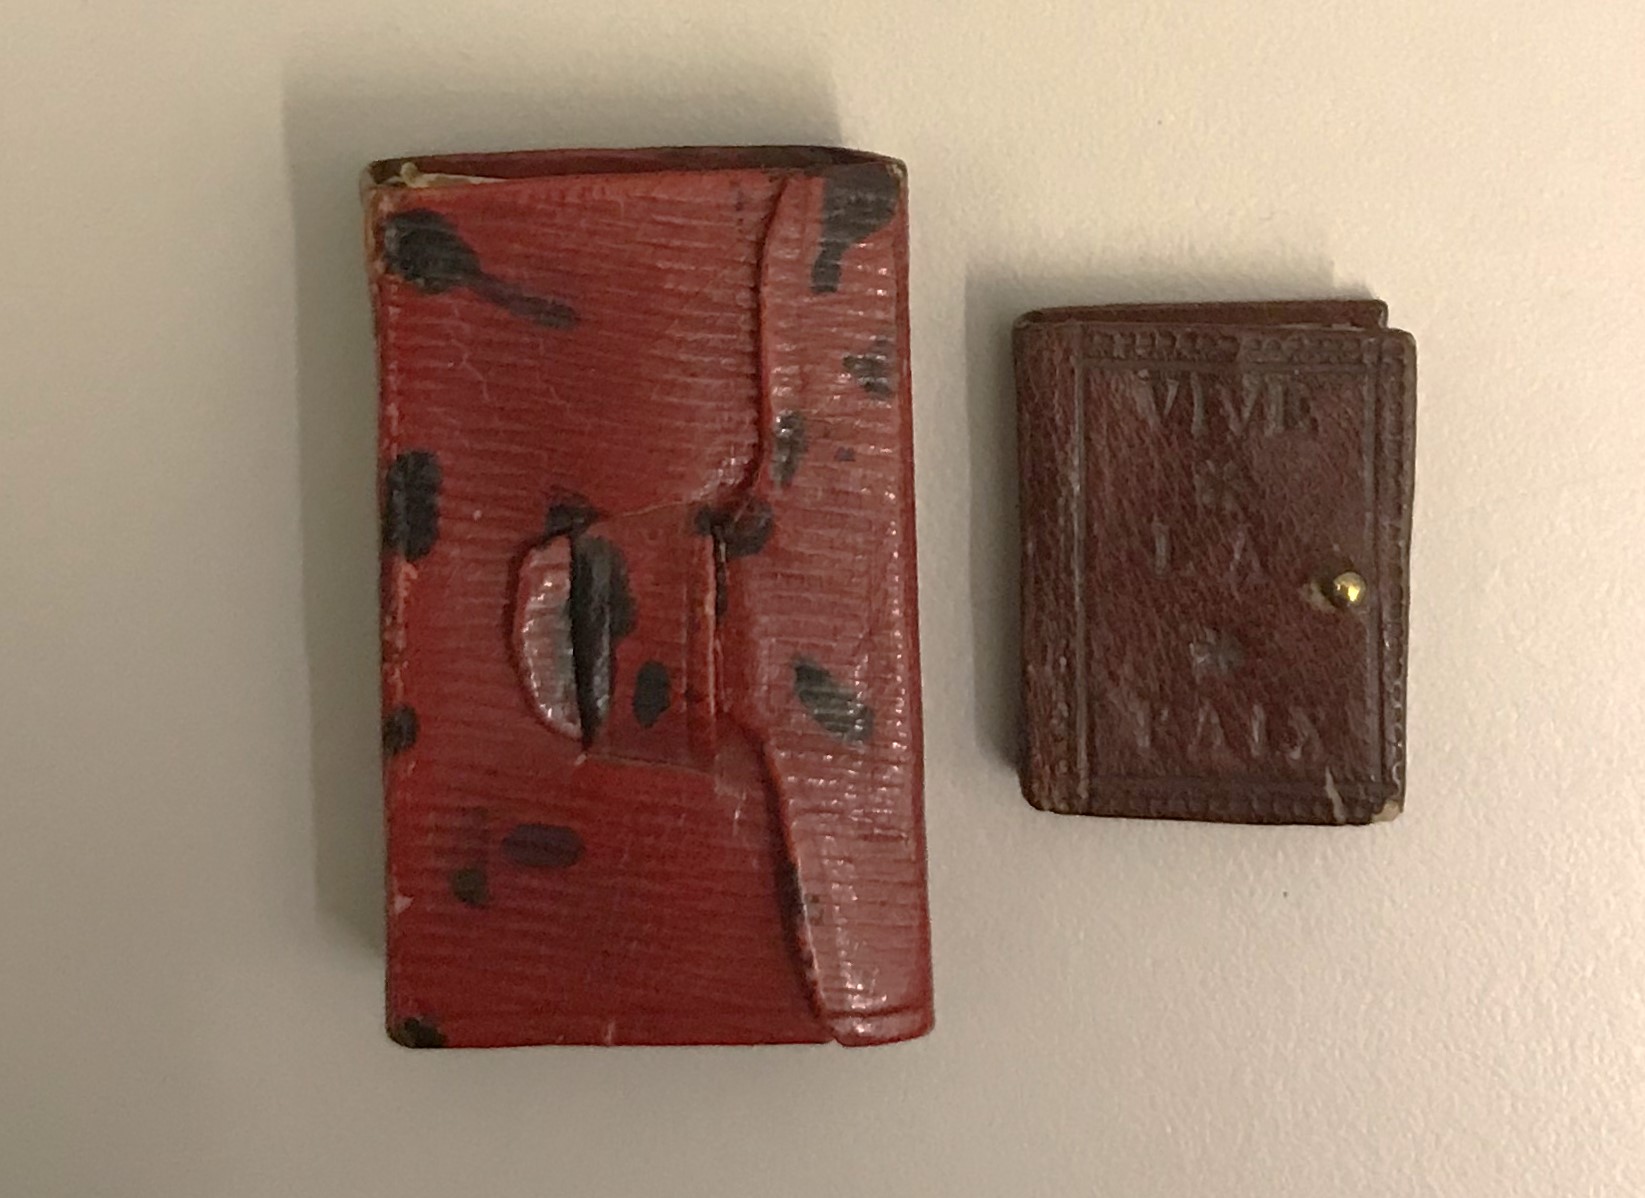 Färgfoto av en väldigt liten bok i brunt skinnband bredvid ett något större rött läderetui.